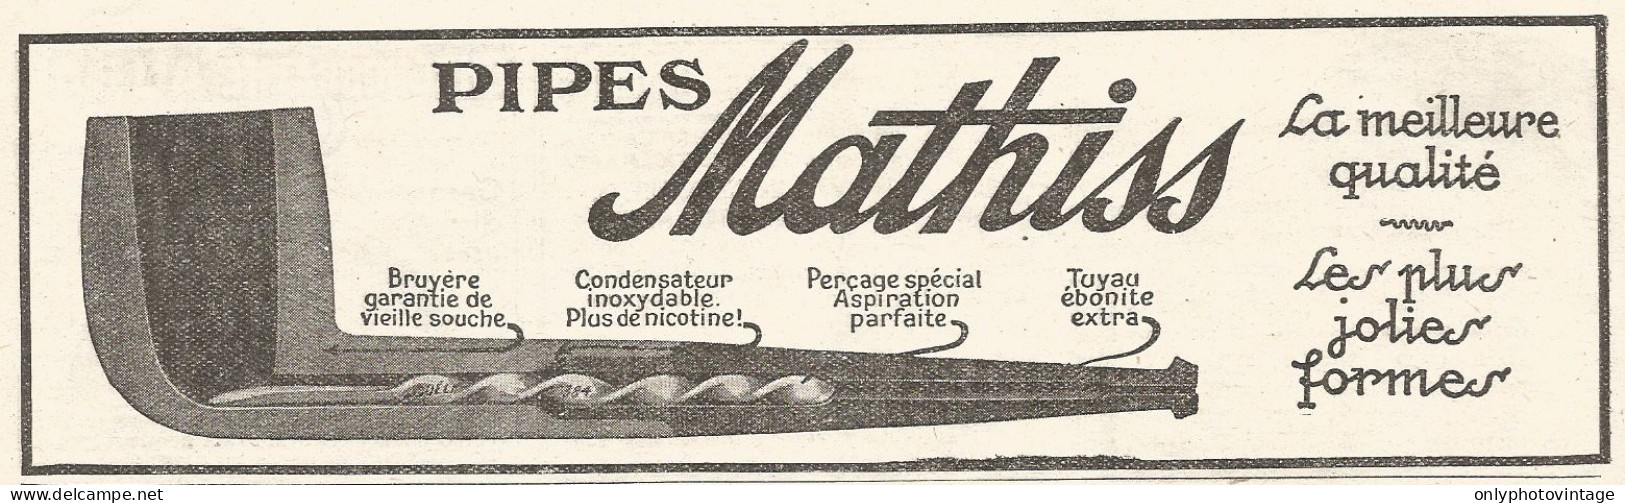 Pipes MATHISS - Pubblicitï¿½ Del 1926 - Old Advertising - Publicités